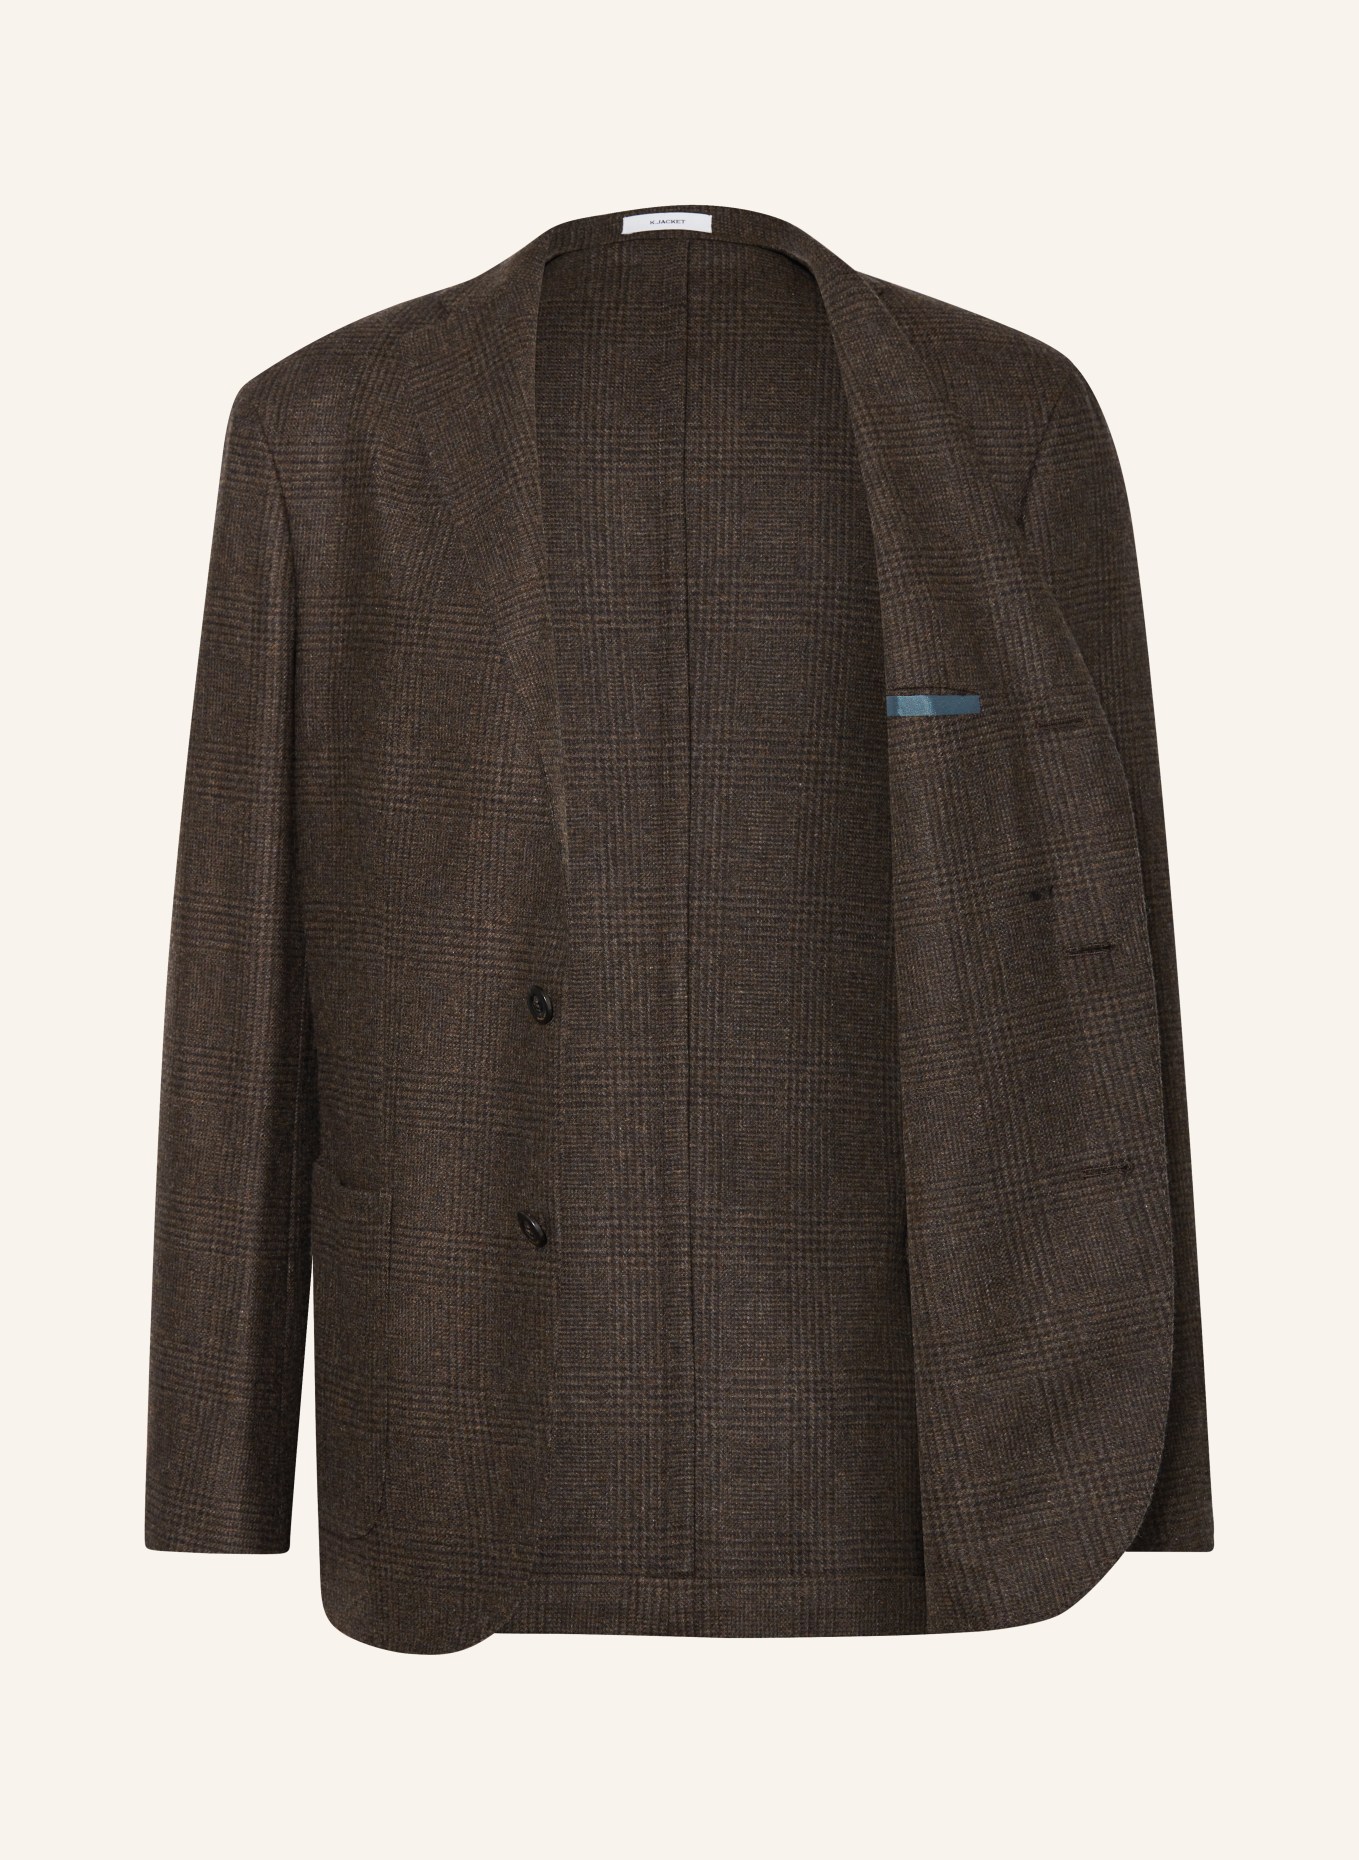 BOGLIOLI Tailored jacket regular fit, Color: DARK BROWN (Image 4)